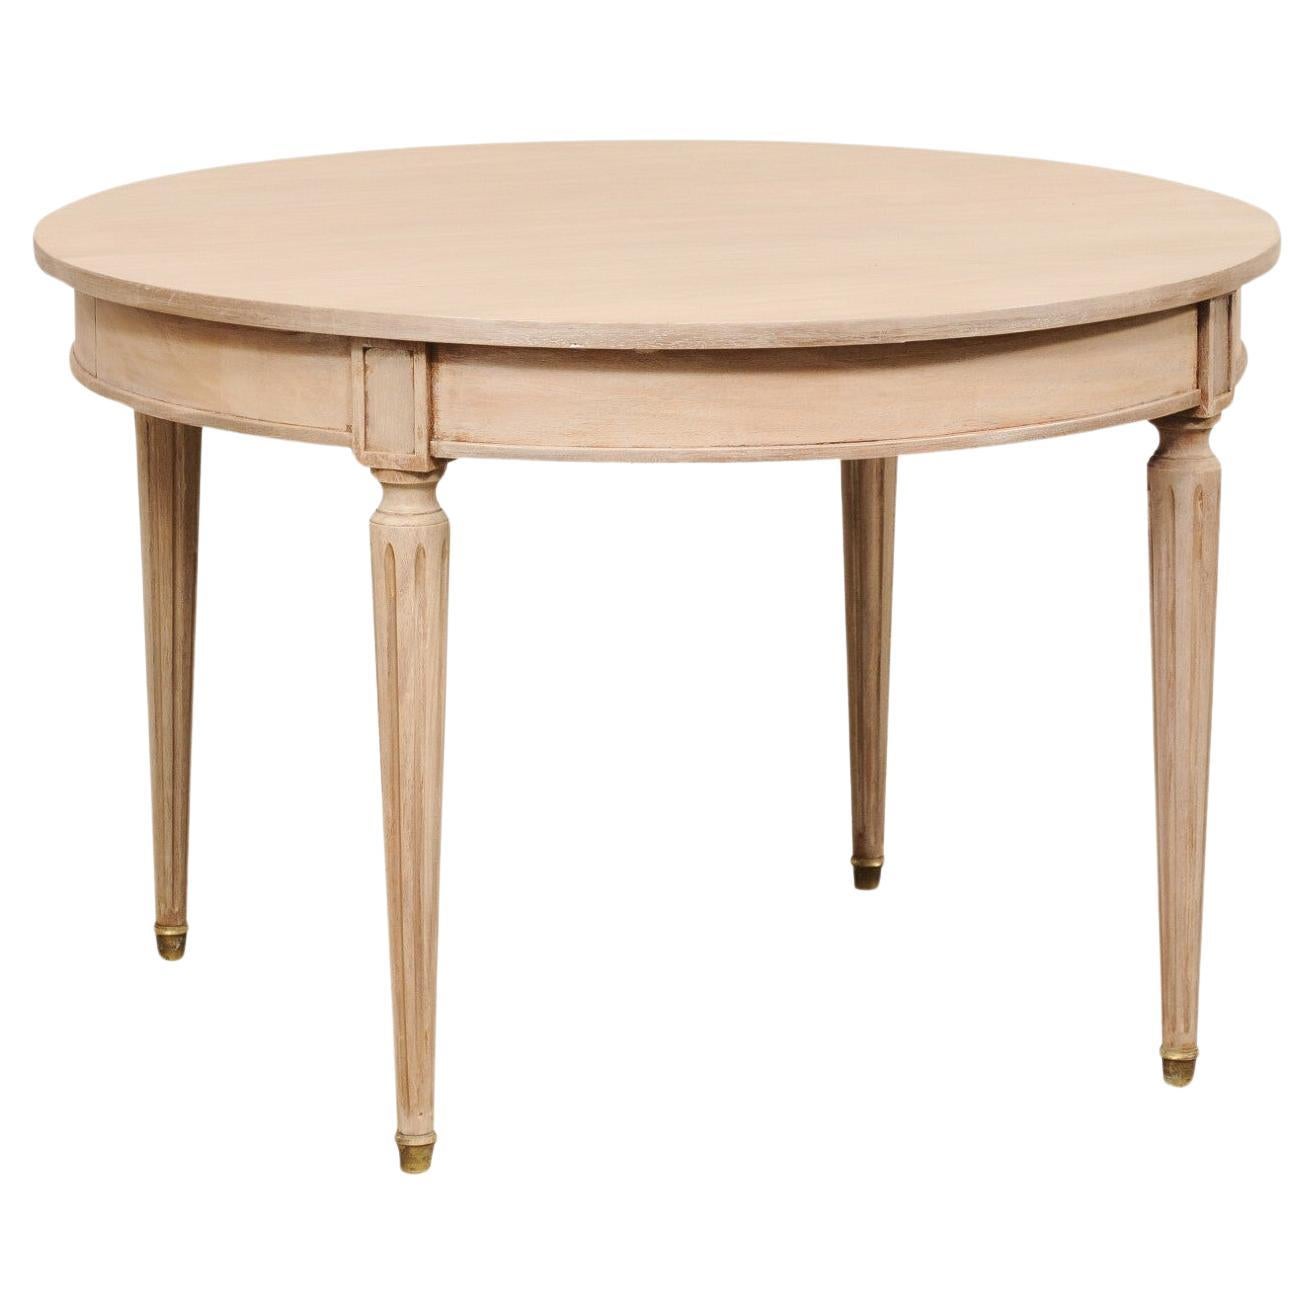 Runder französischer Tisch aus lackiertem Holz mit geflochtenen Beinen und Messingfüßen, 3,5 Fuß Durchmesser